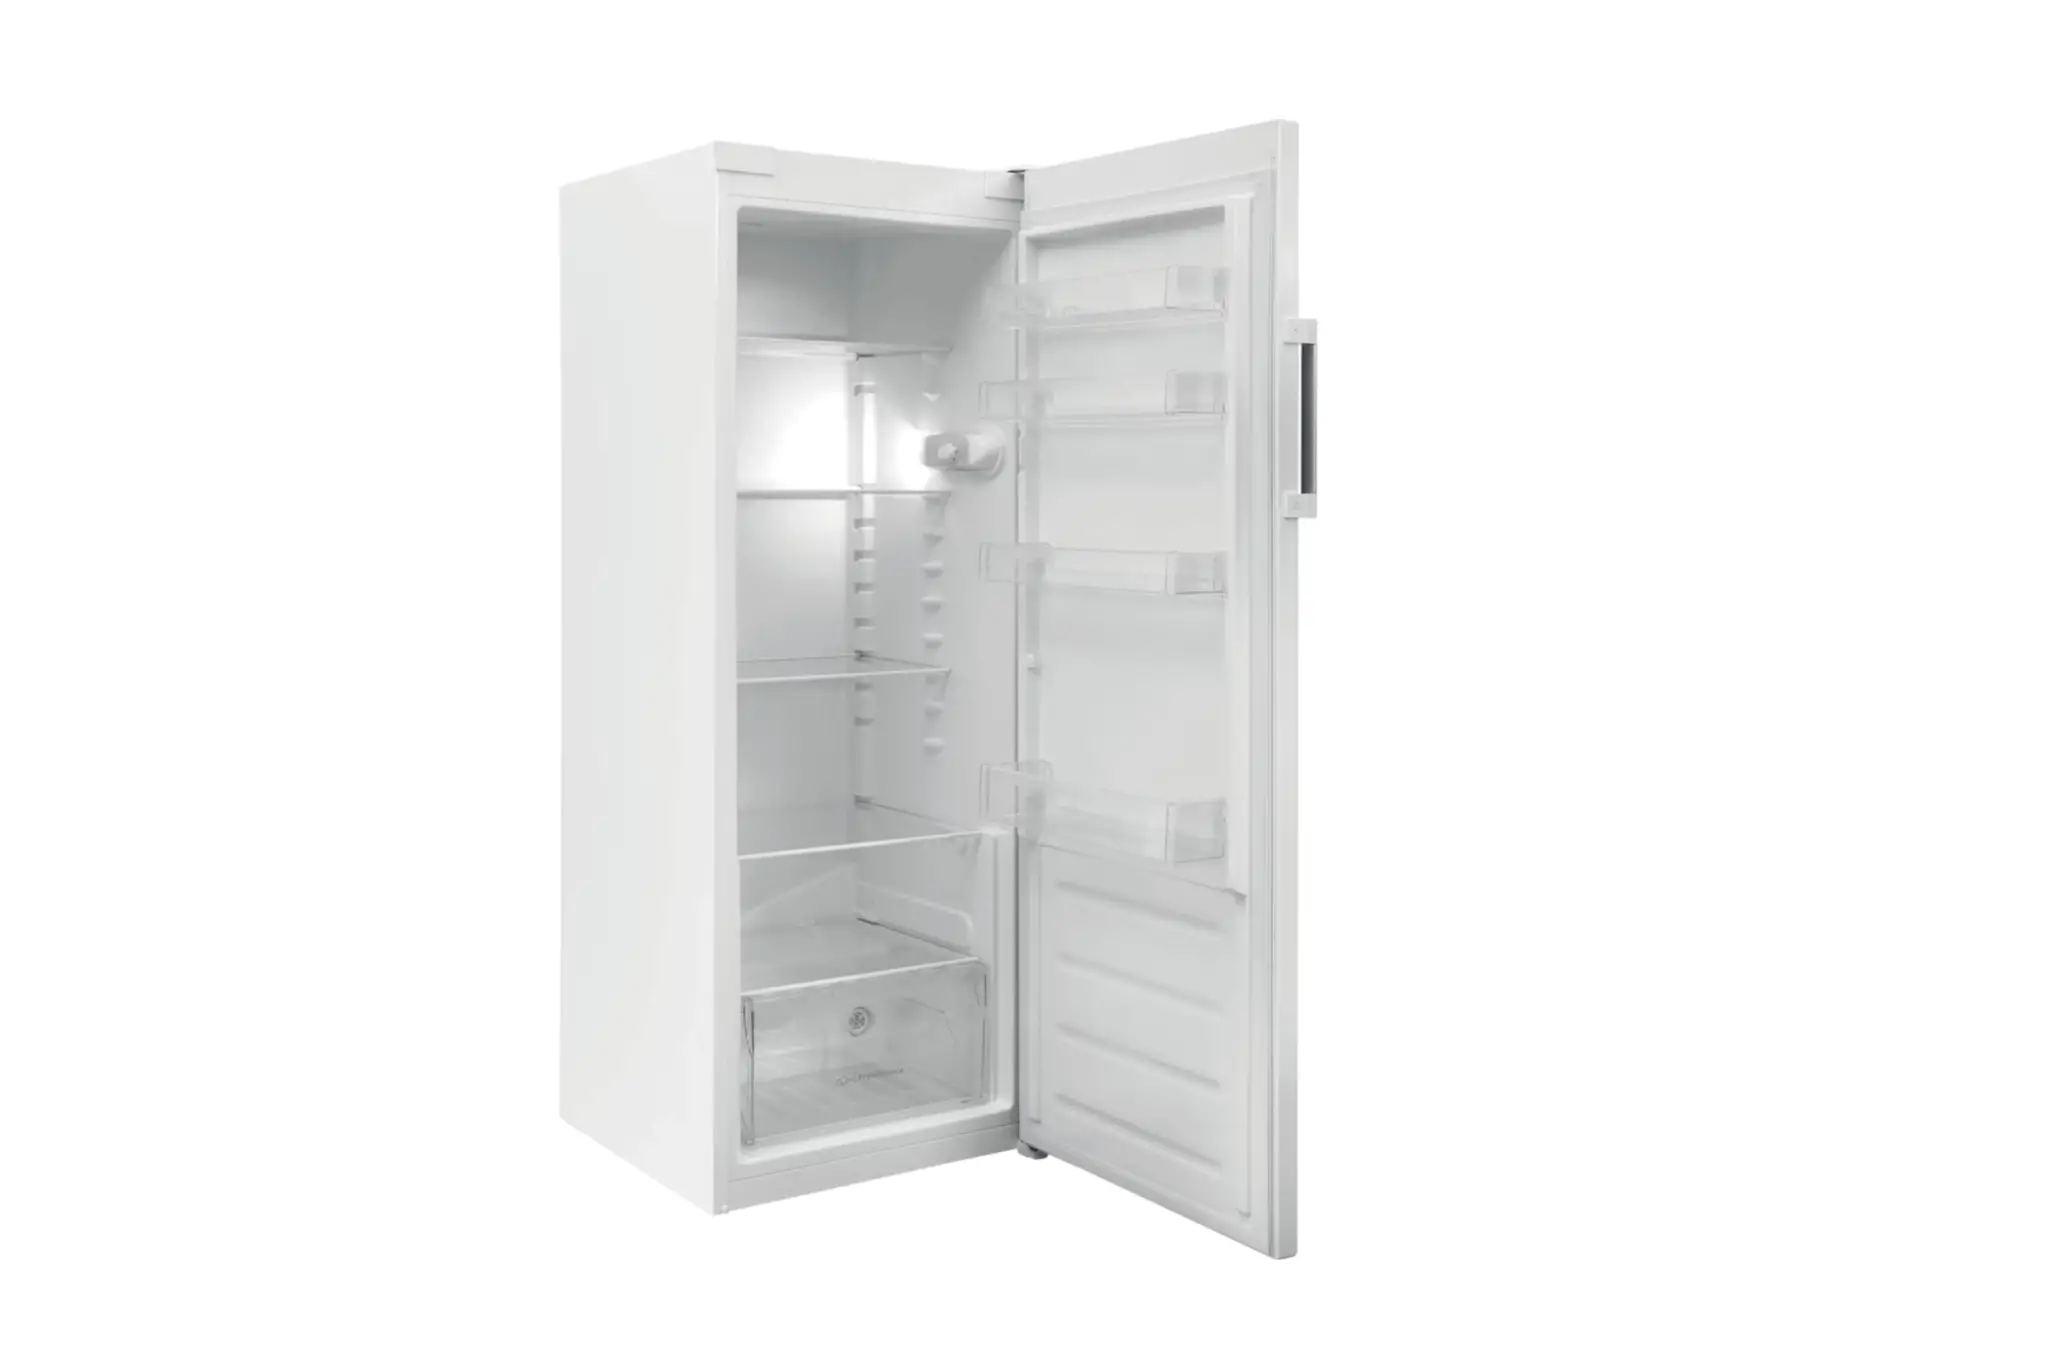 Réfrigérateur 1 Porte 60 cm 323l Statique Silver - Si61s